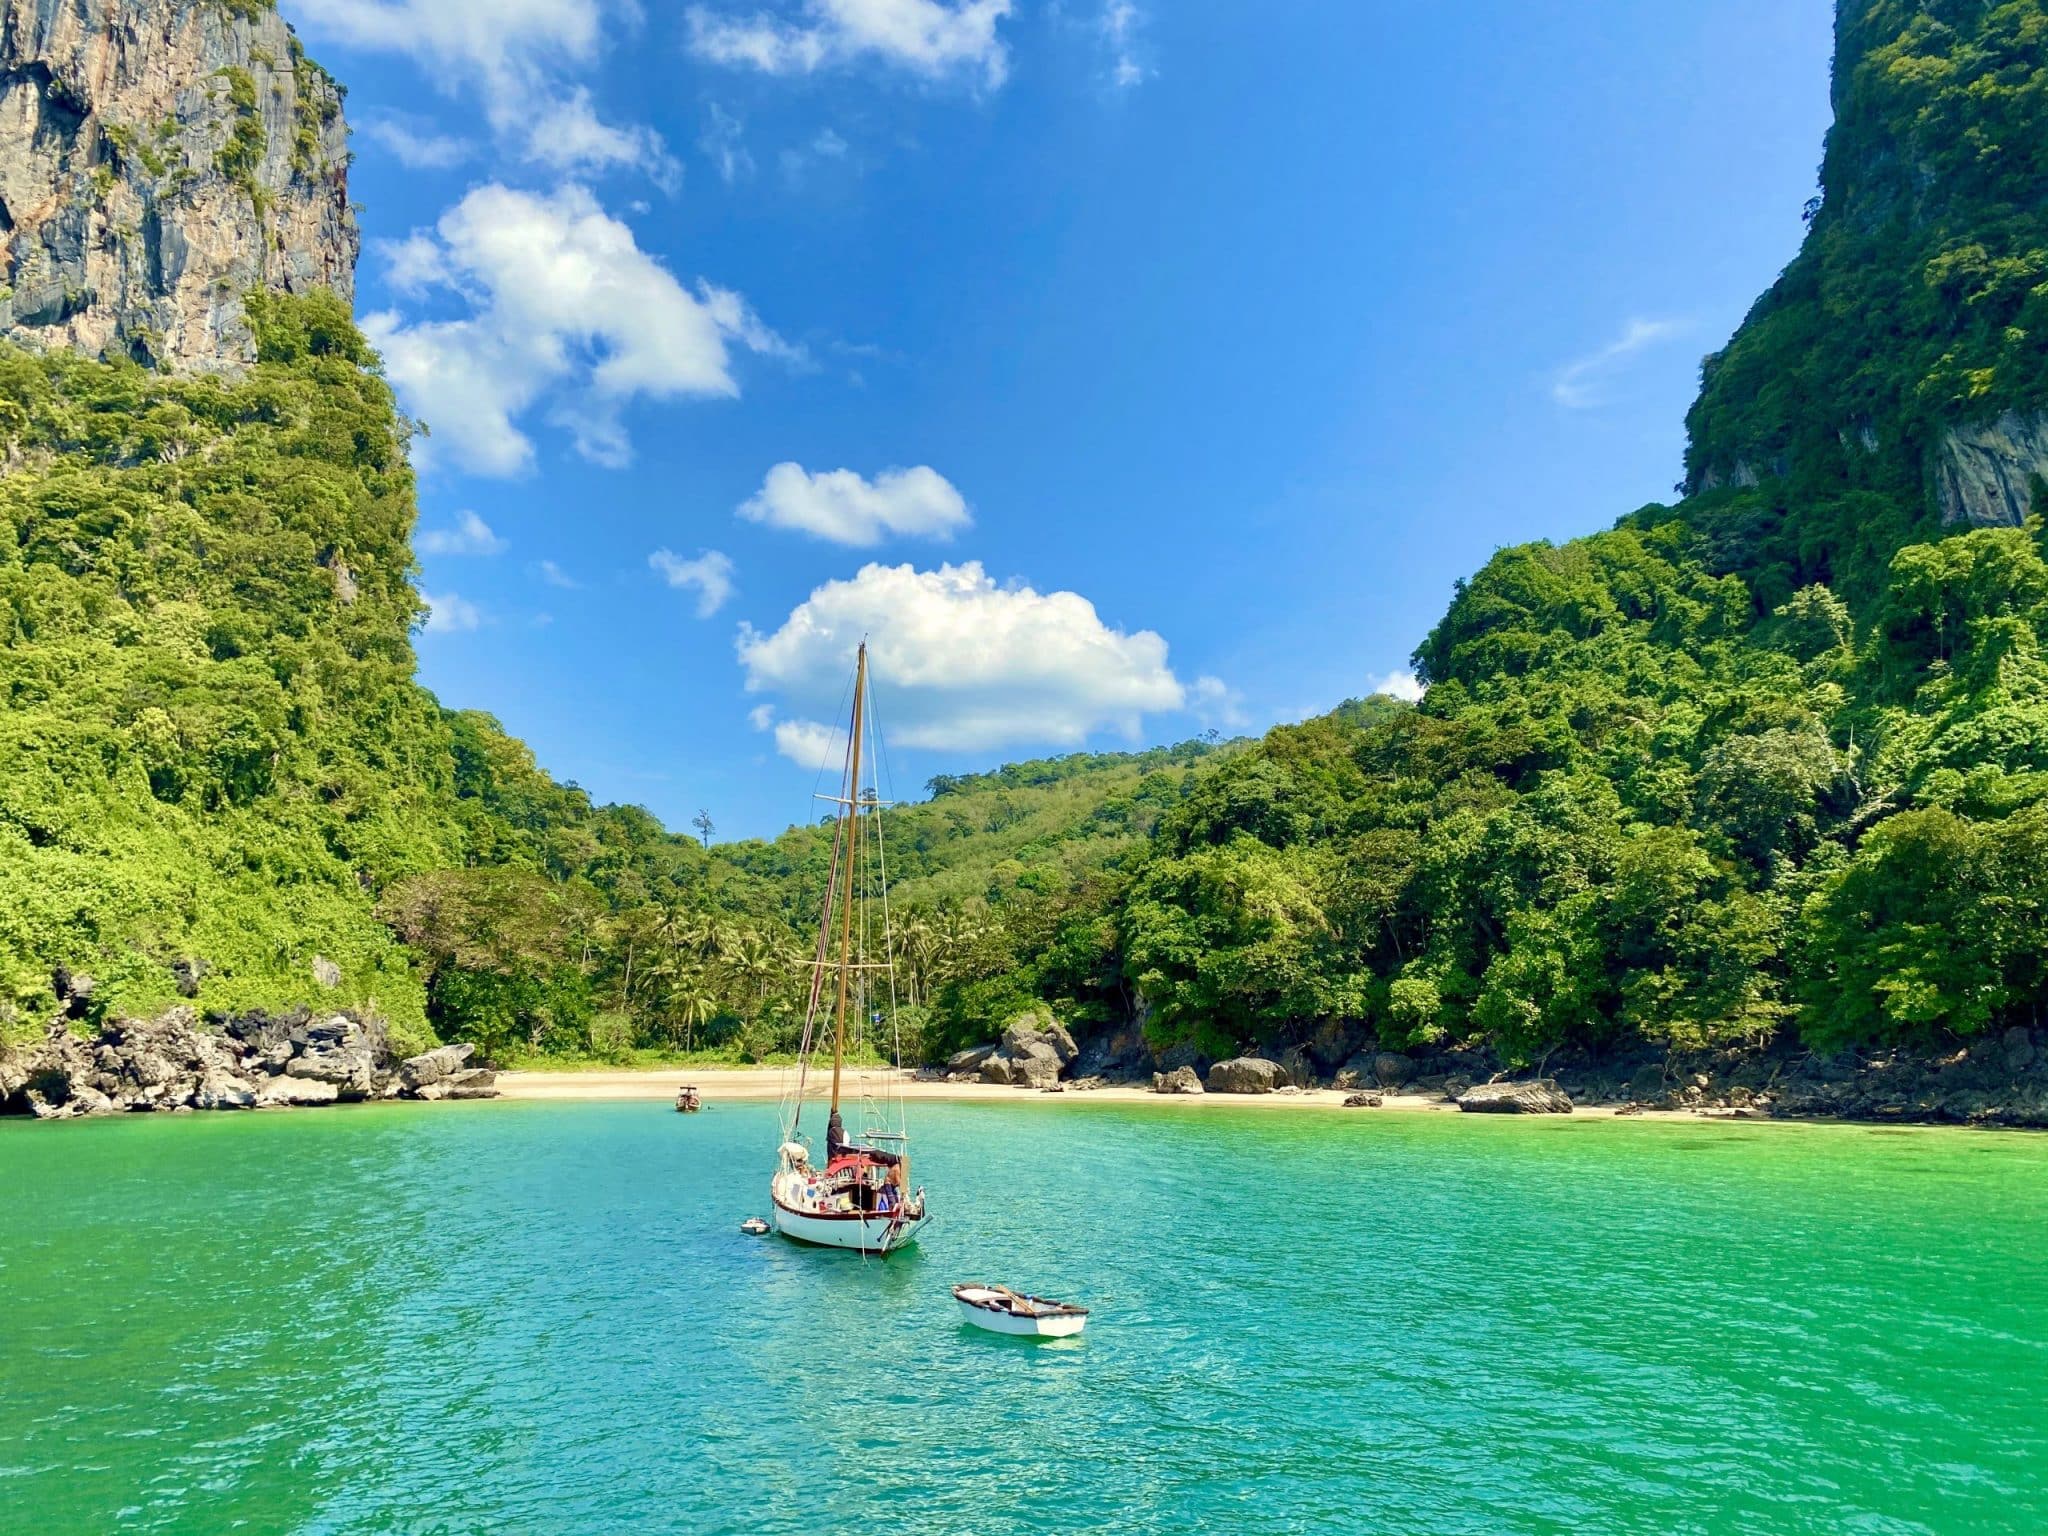 De mooiste eilanden van Thailand – eilandvakantie in het paradijs?